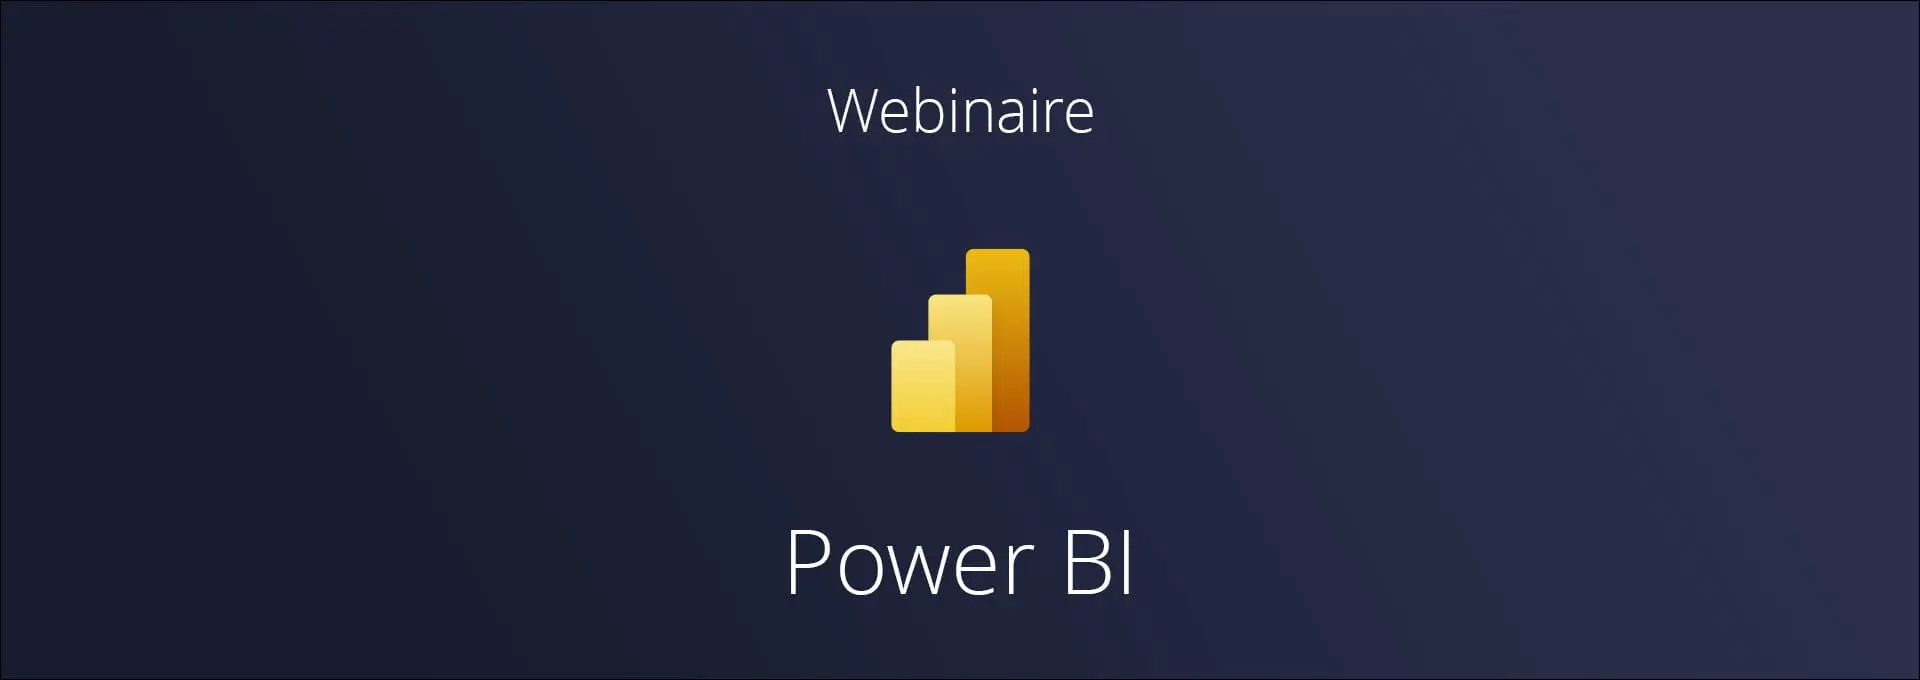 Actualités Webinaires - Power BI Replay